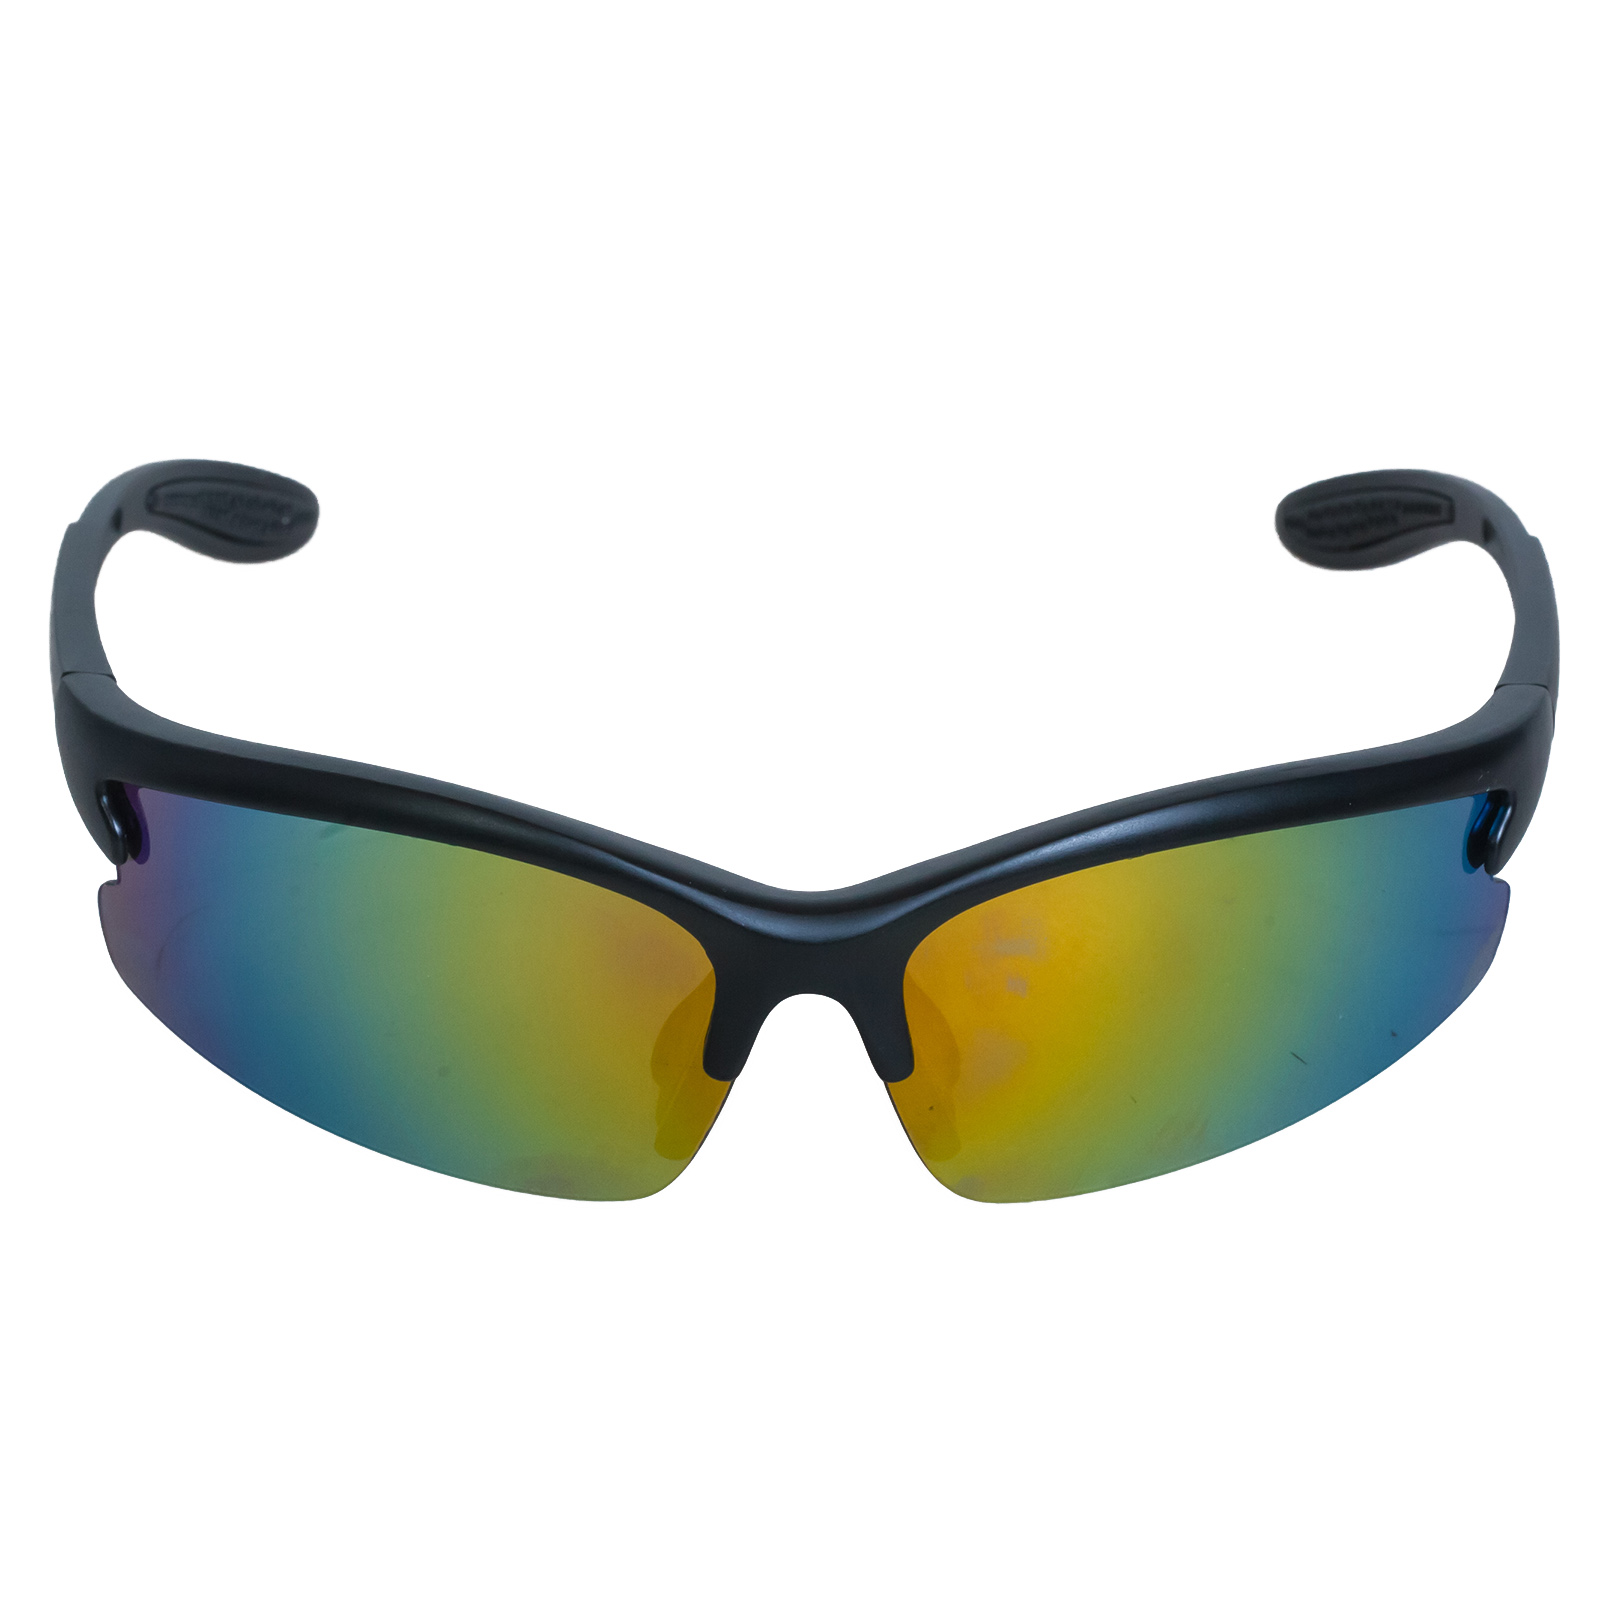 Выгодно купить поликарбонатные очки UV400 со сменными линзами